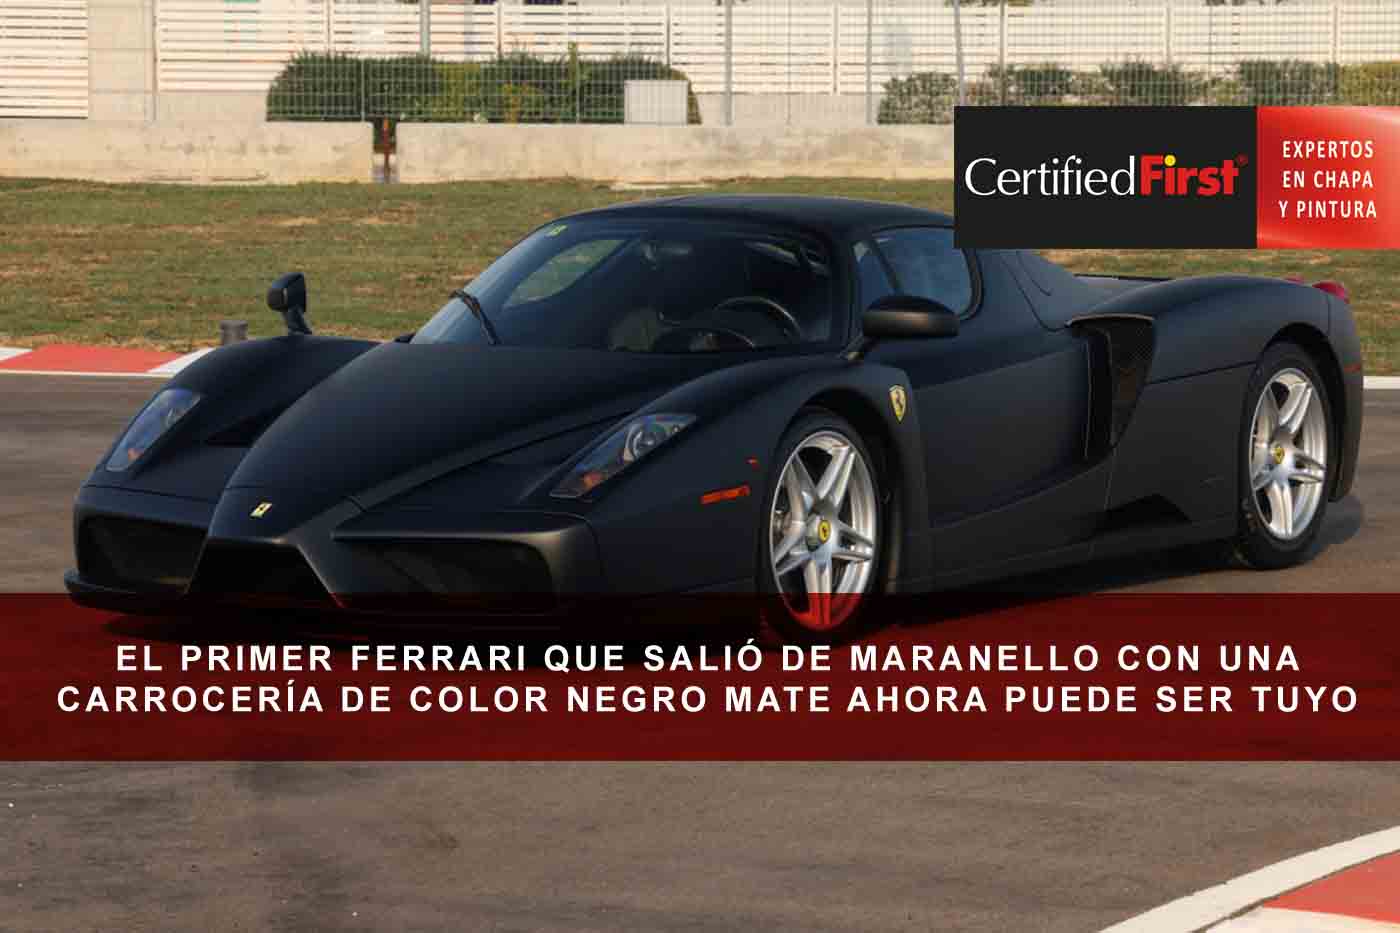 El primer Ferrari que salió de Maranello con una carrocería de color negro mate ahora puede ser tuyo